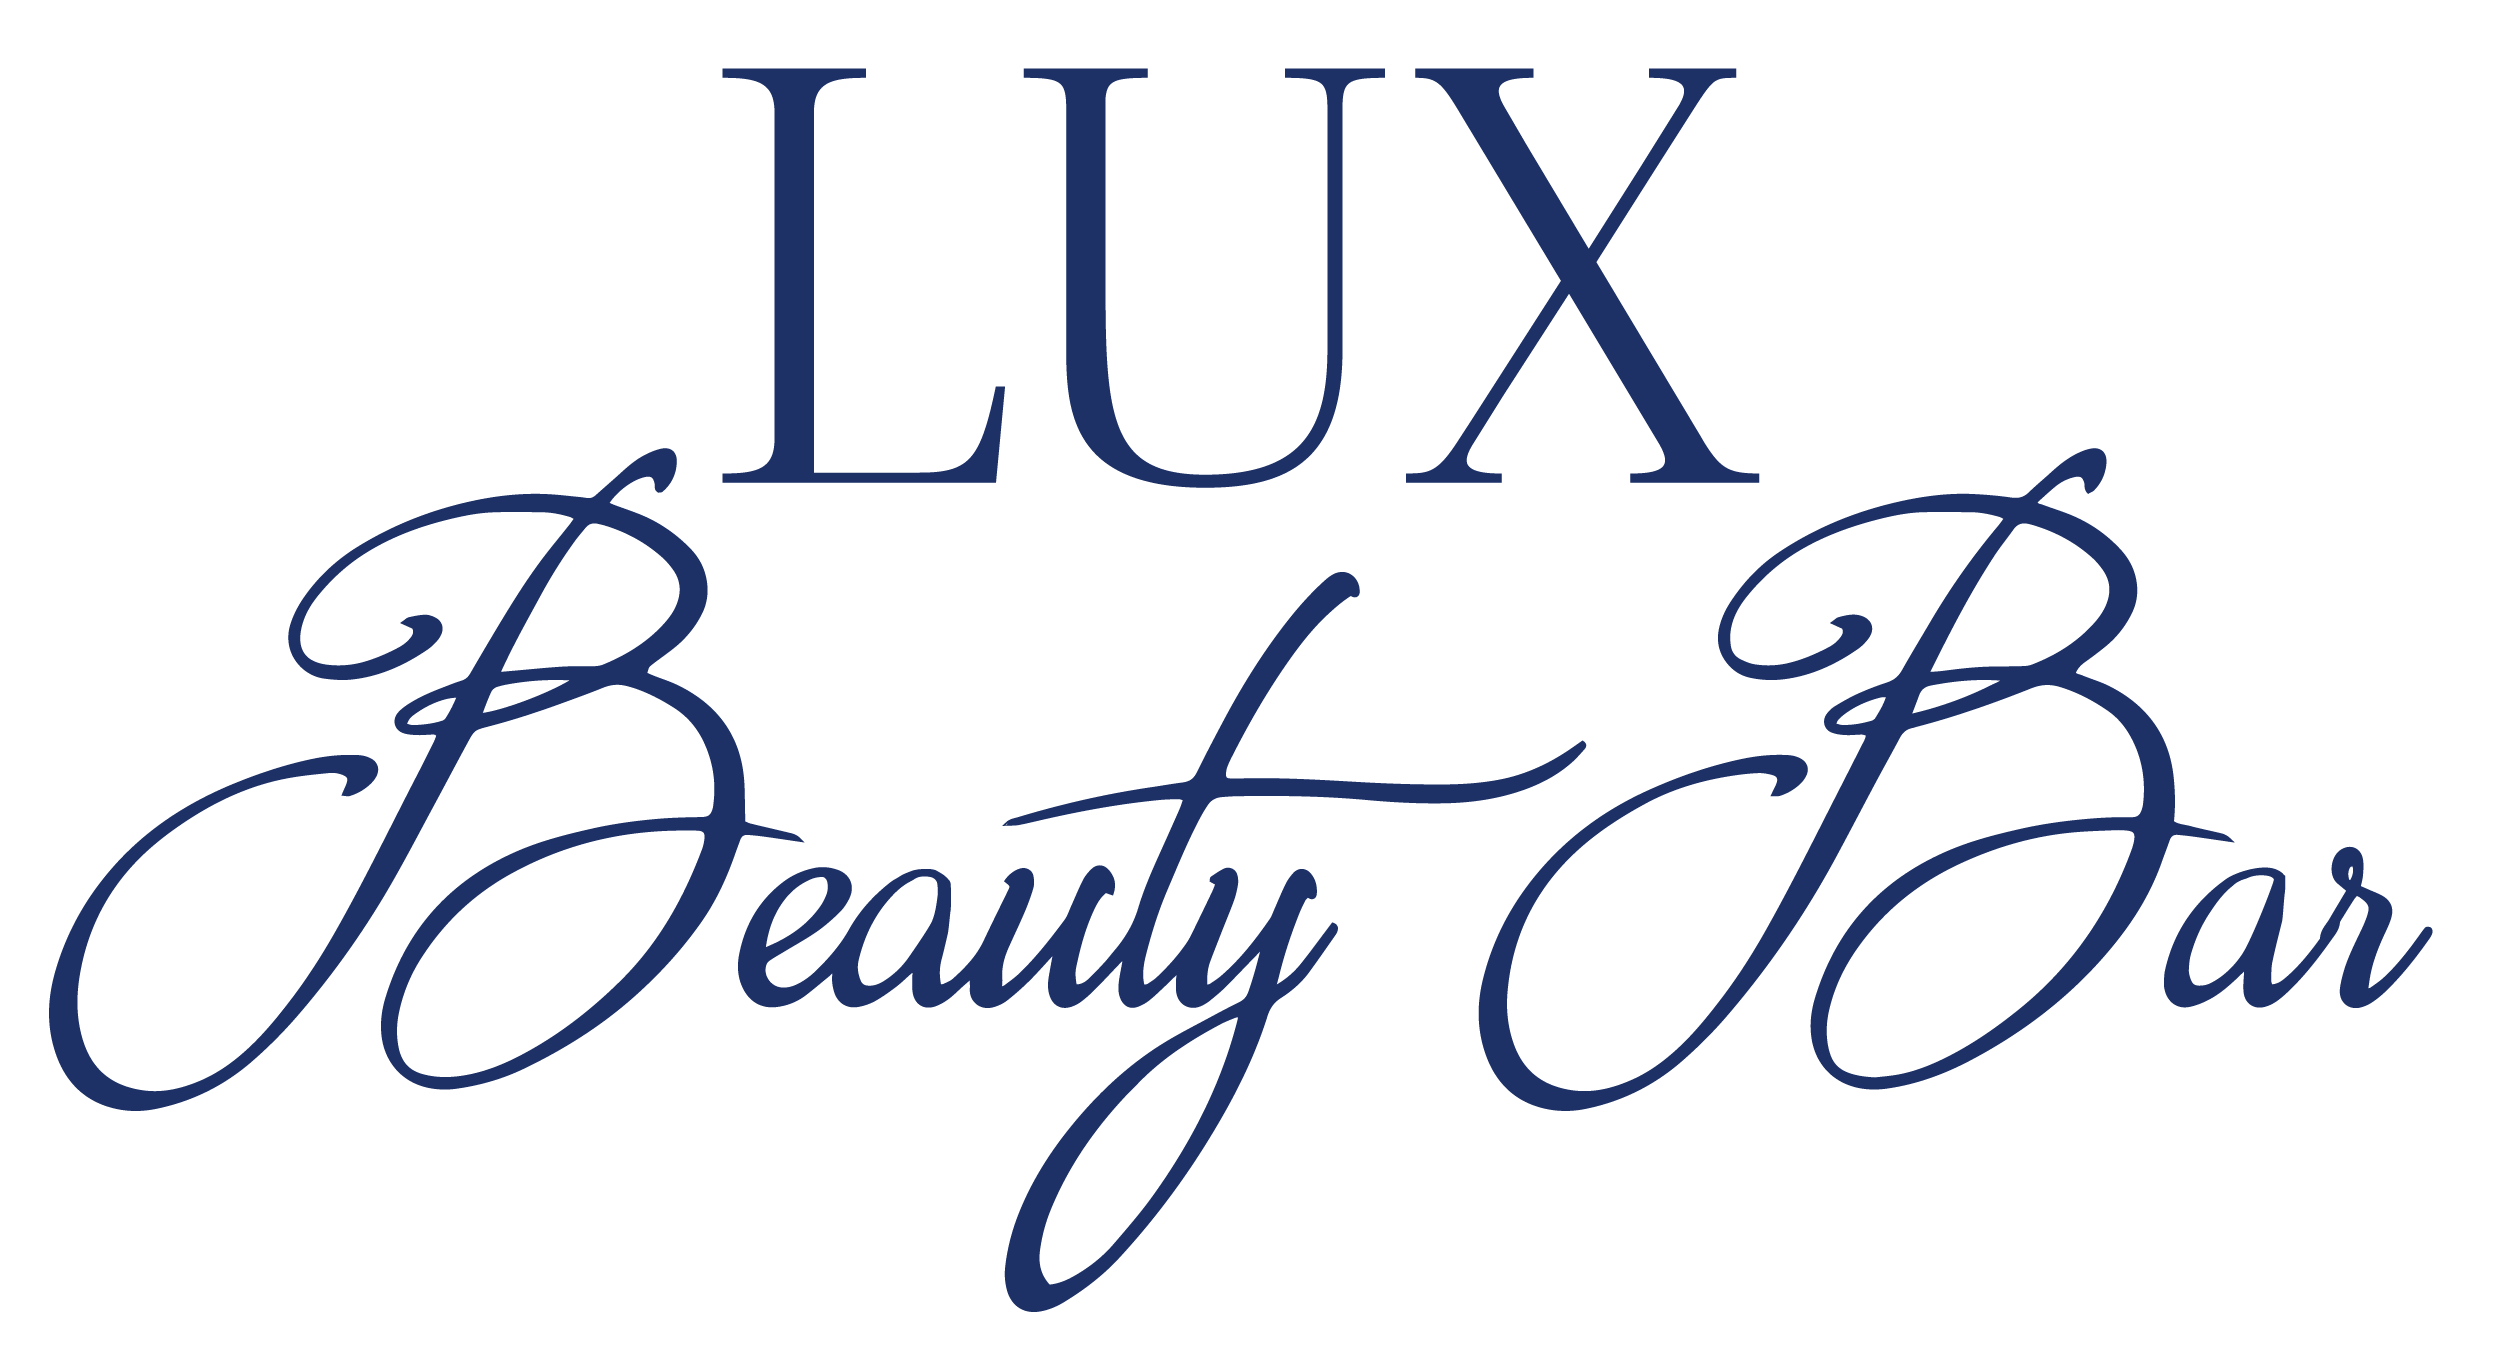 Lux Beauty Bar